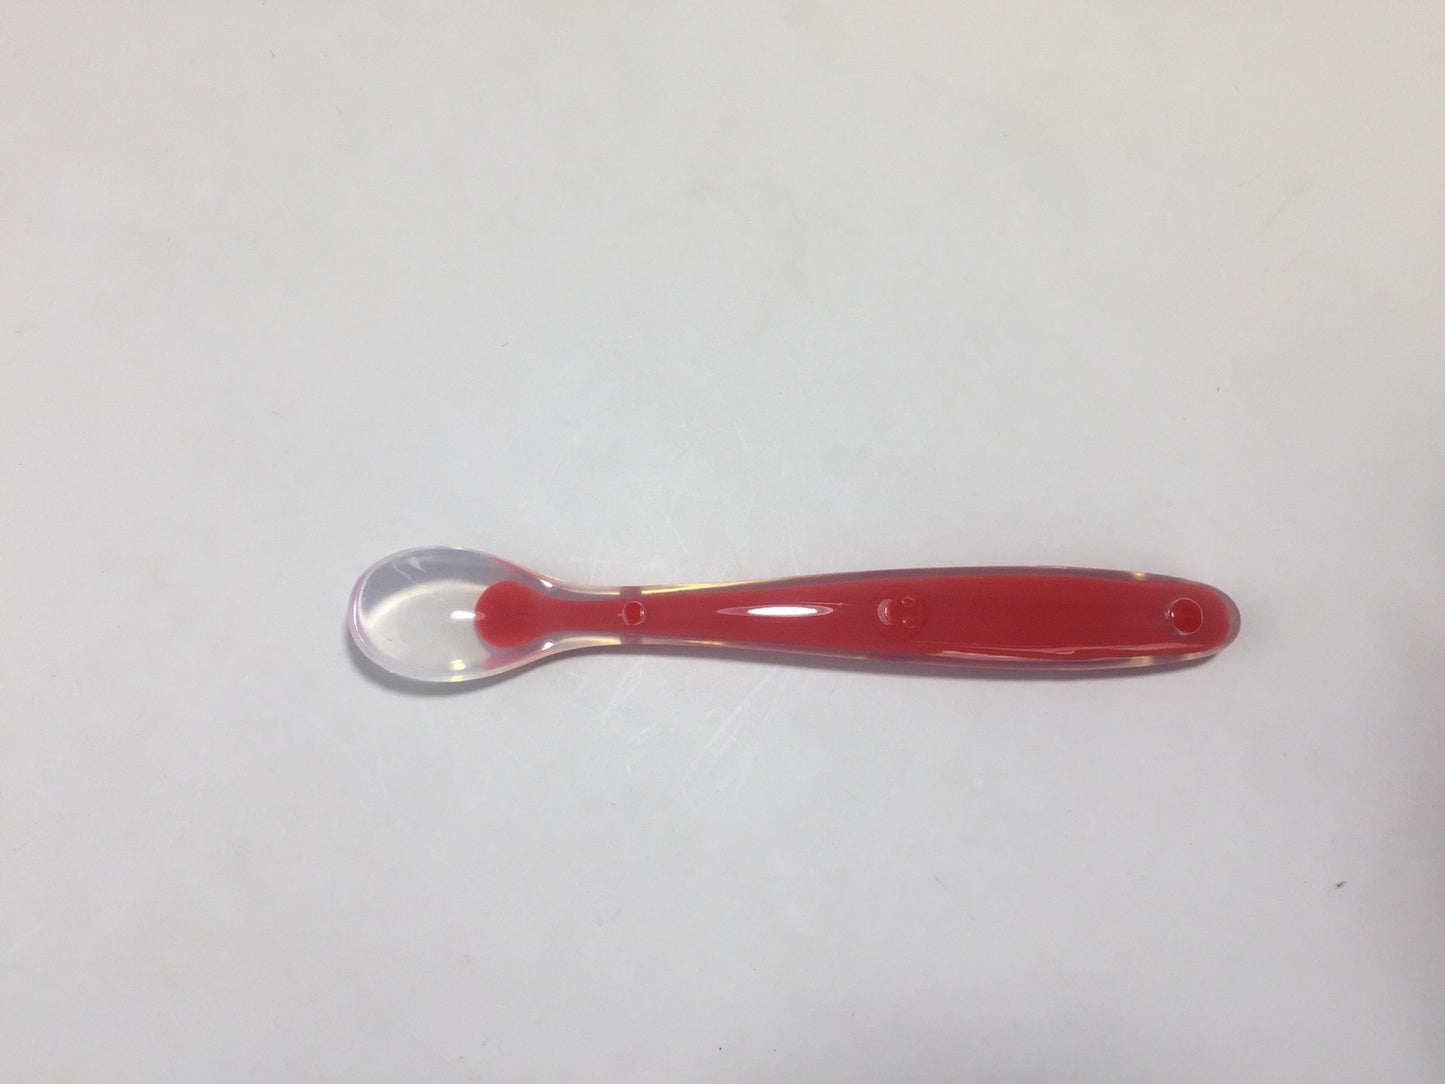 Rainbow Gum-Friendly Soft Silicone Feeding Spoon